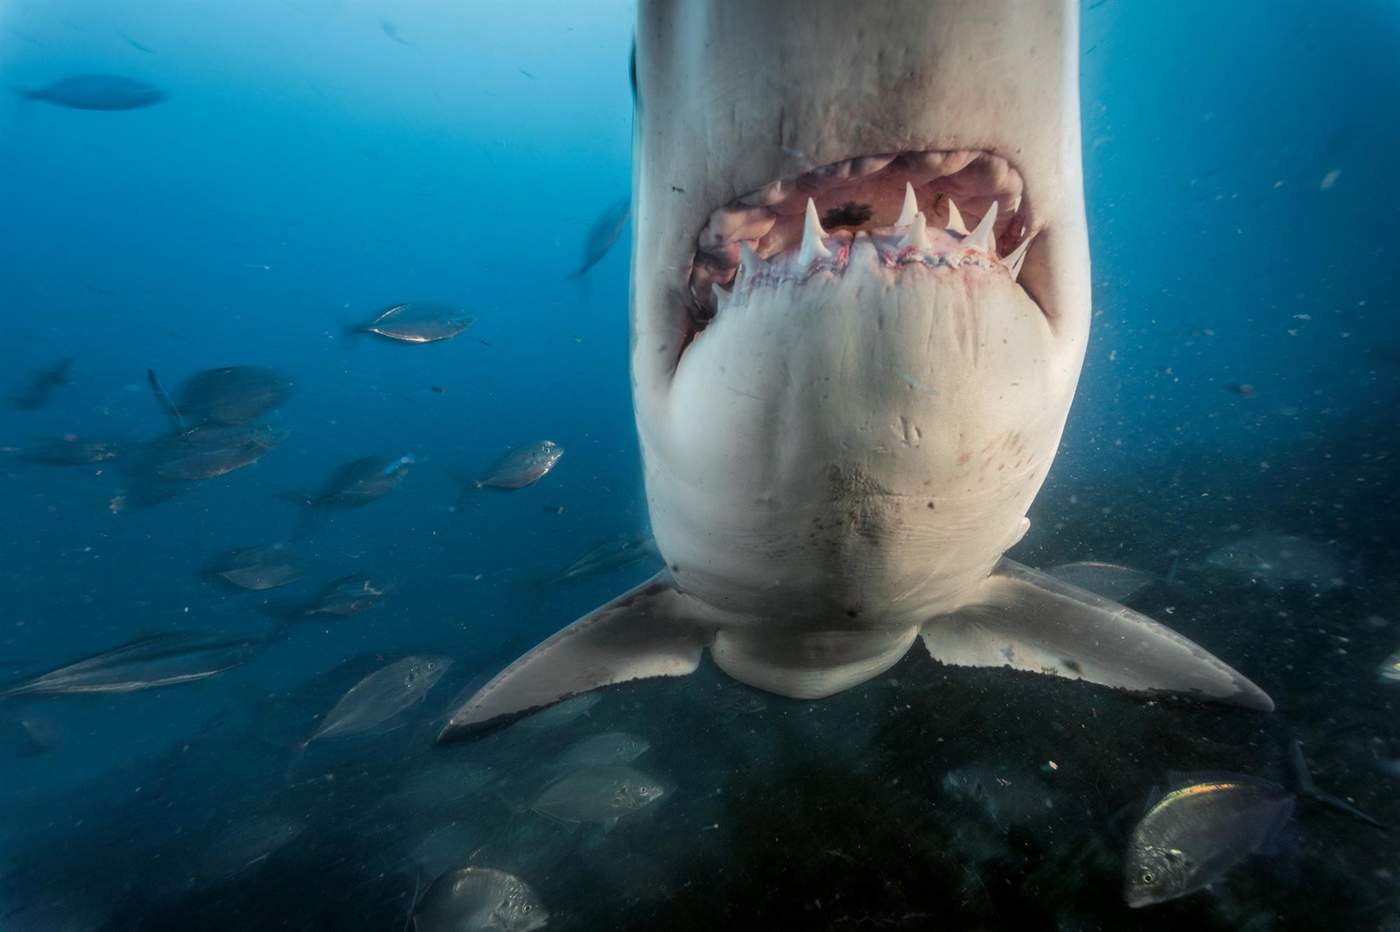 Logran decodificar el genoma completo del gran tiburón blanco